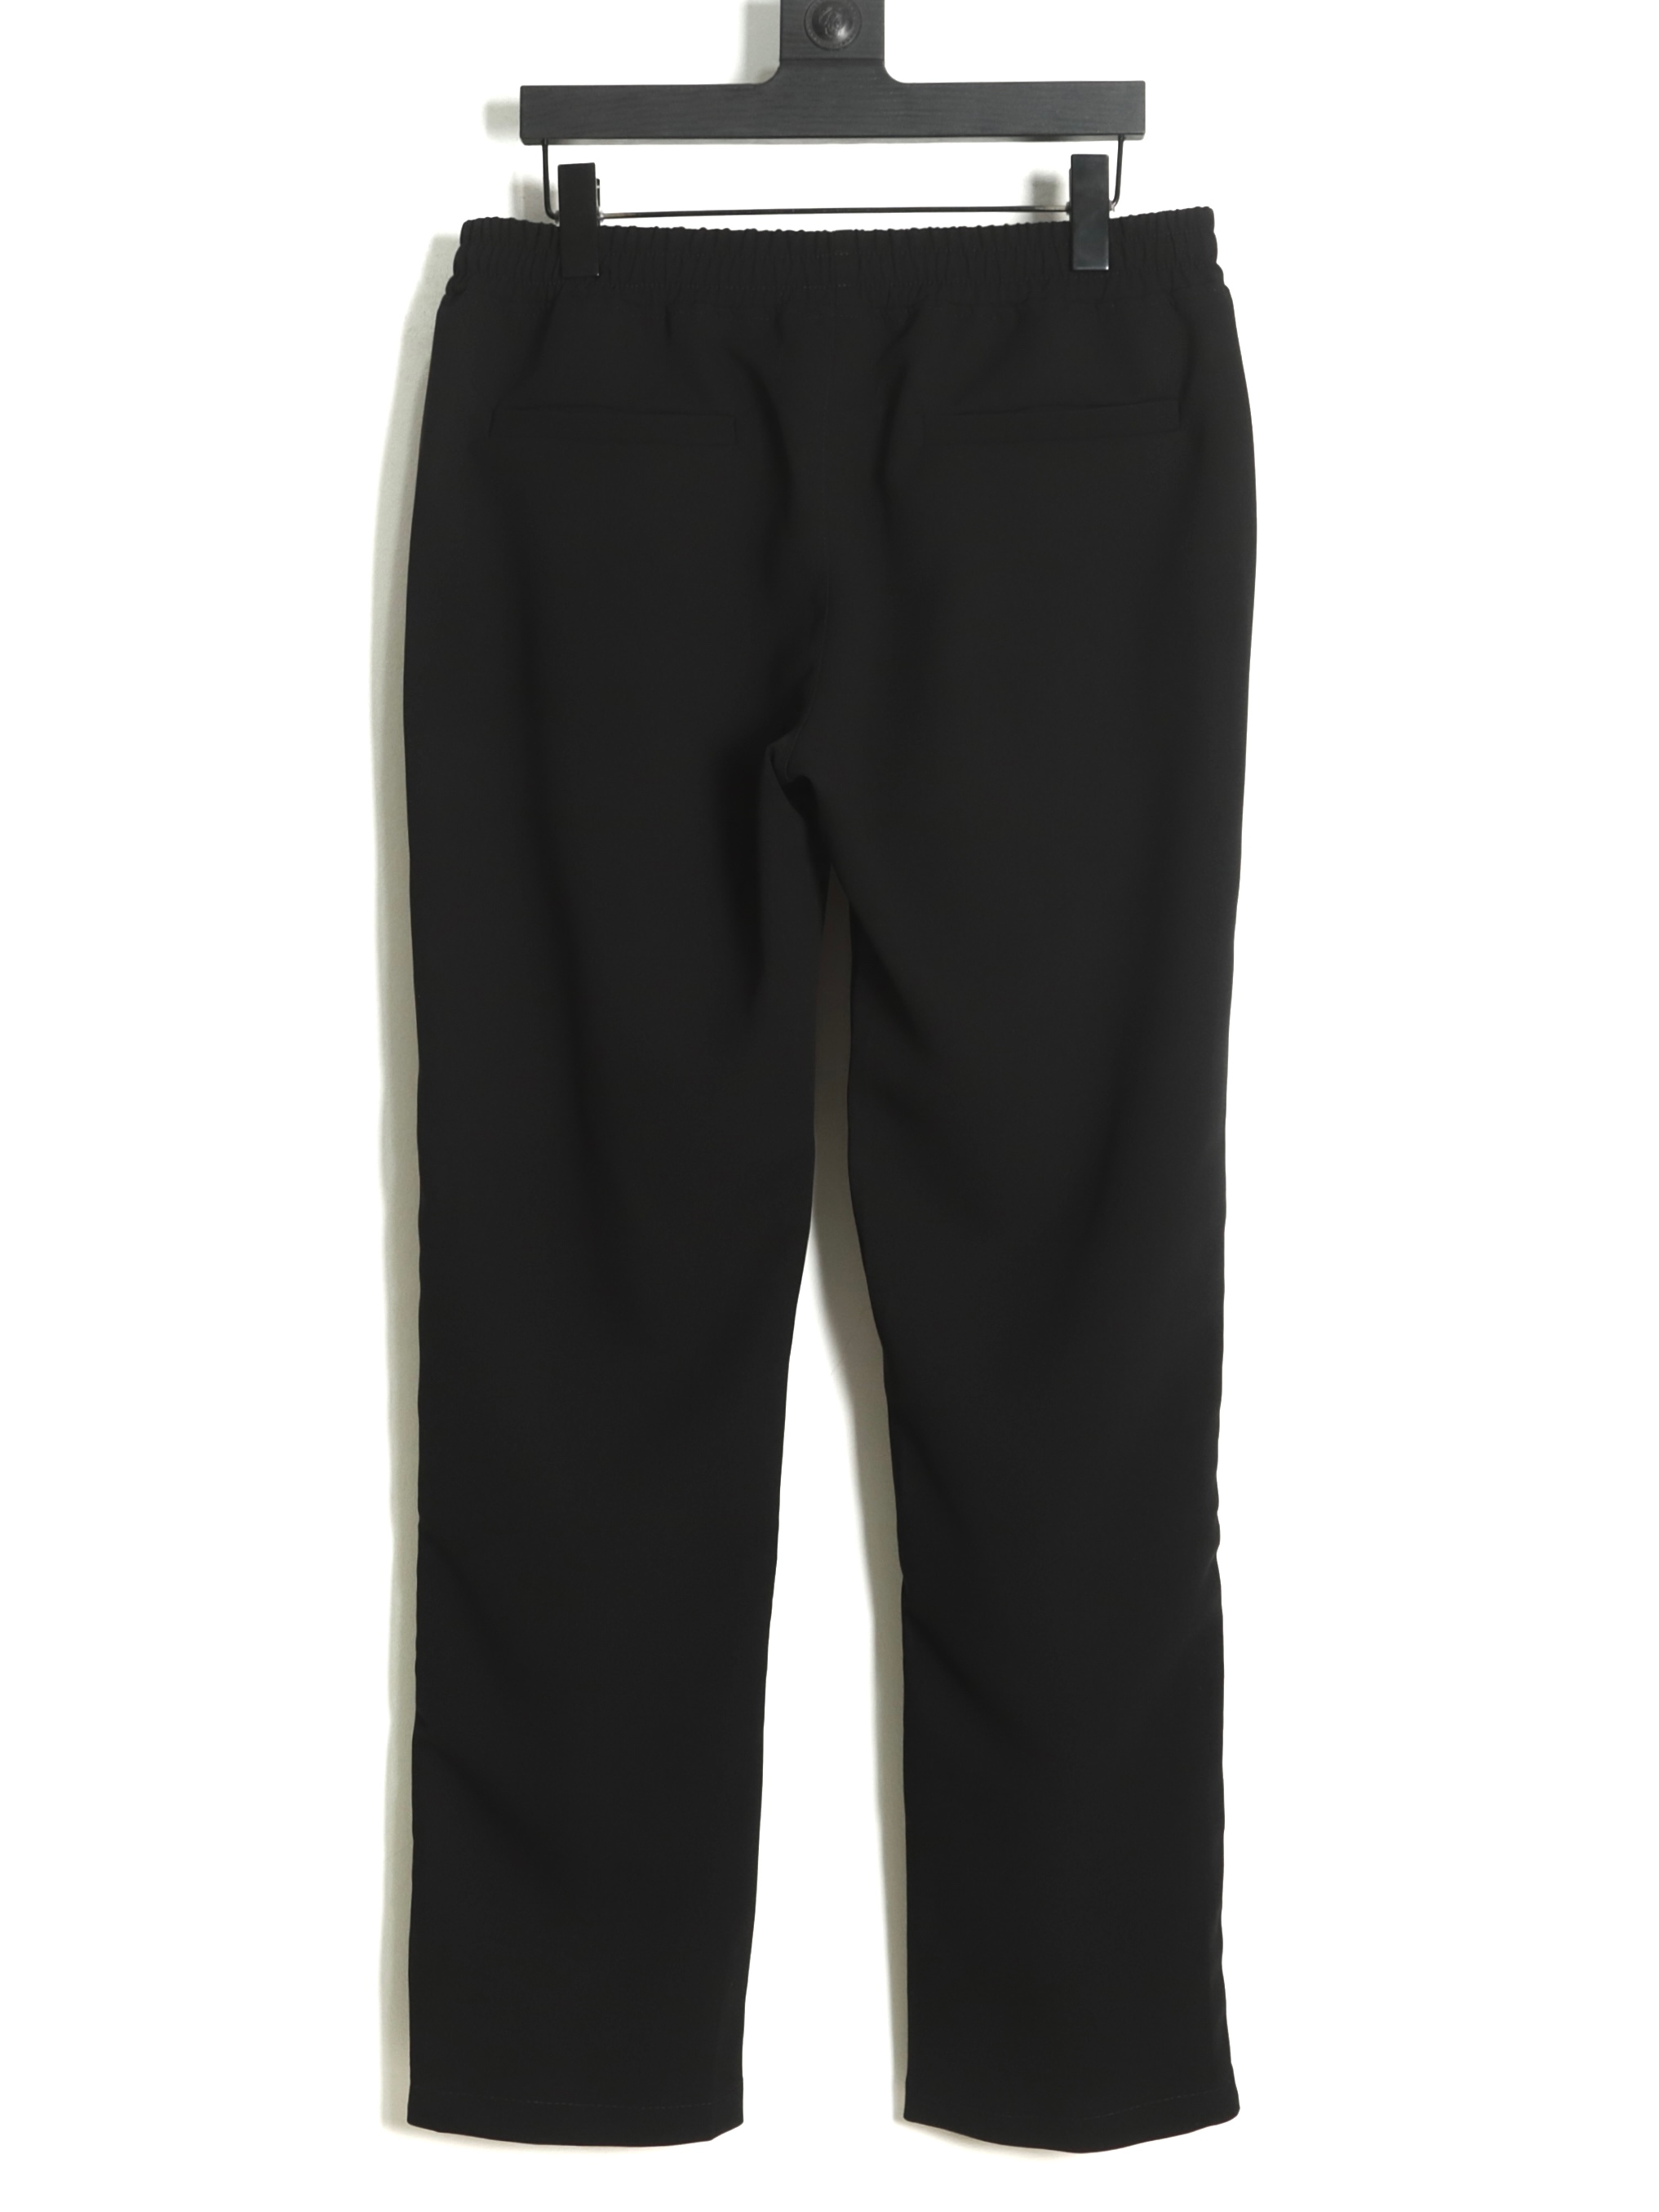 REPRESENT ズボン プレゼント ラッピングスーパーコピー カジュアルズボン HOT品質保証 パンツ 運動 人気もの ブラック_2